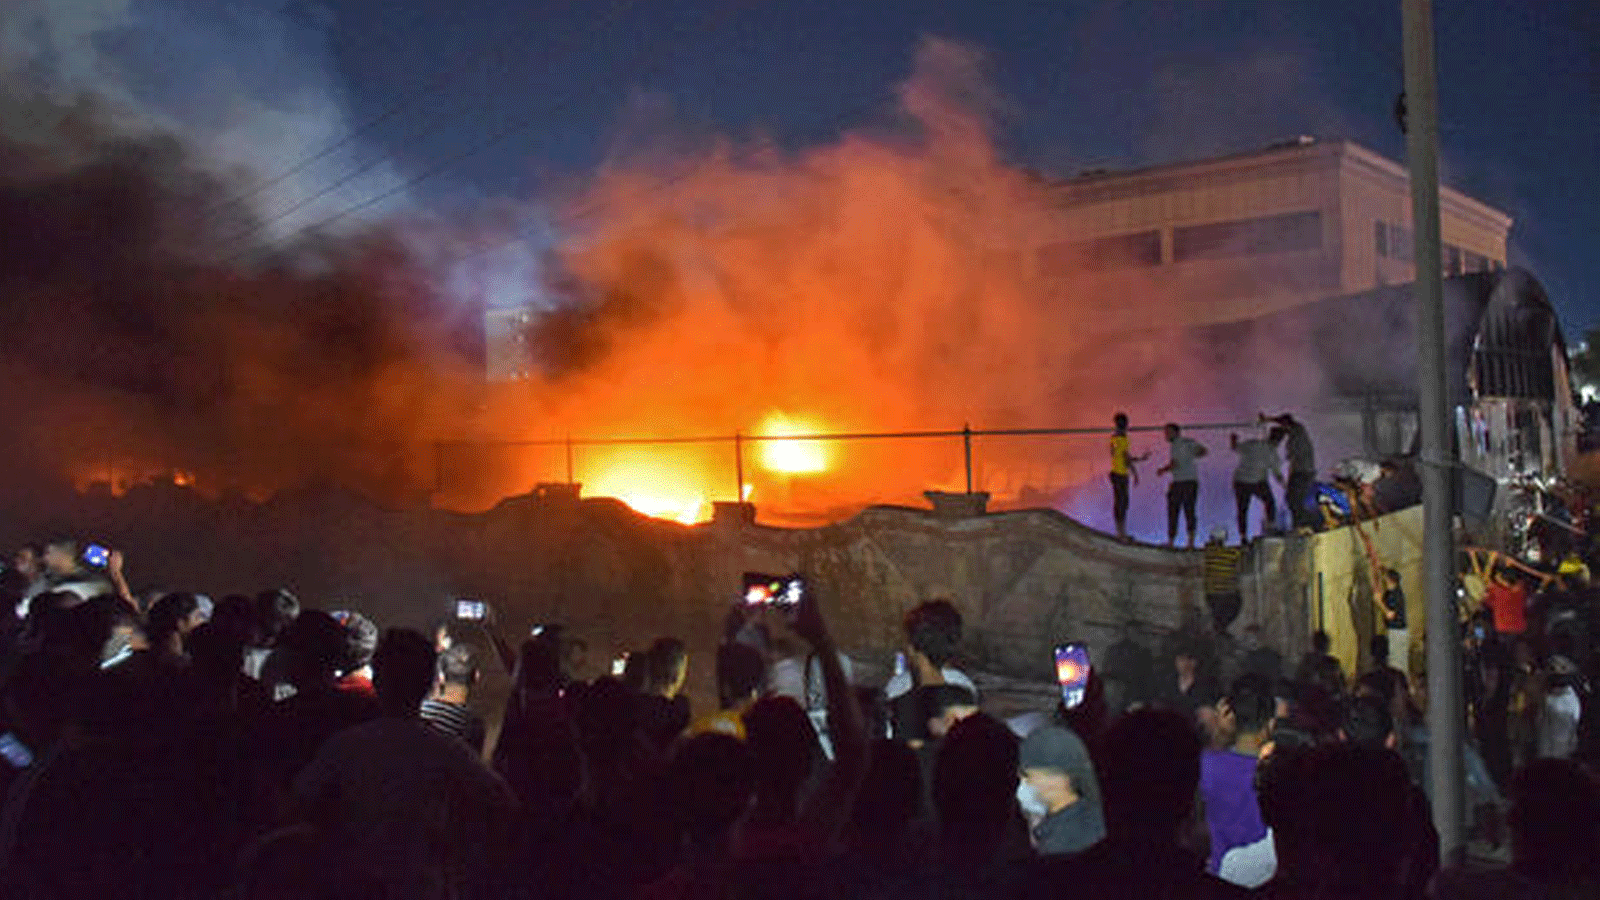 مواطنون يصورون ألسنة اللهب في حريق جناح عزل فيروس كورونا بمستشفى الحسين/ مدينة الناصرية جنوب العراق. مساء 12 يوليو/ تموز 2021